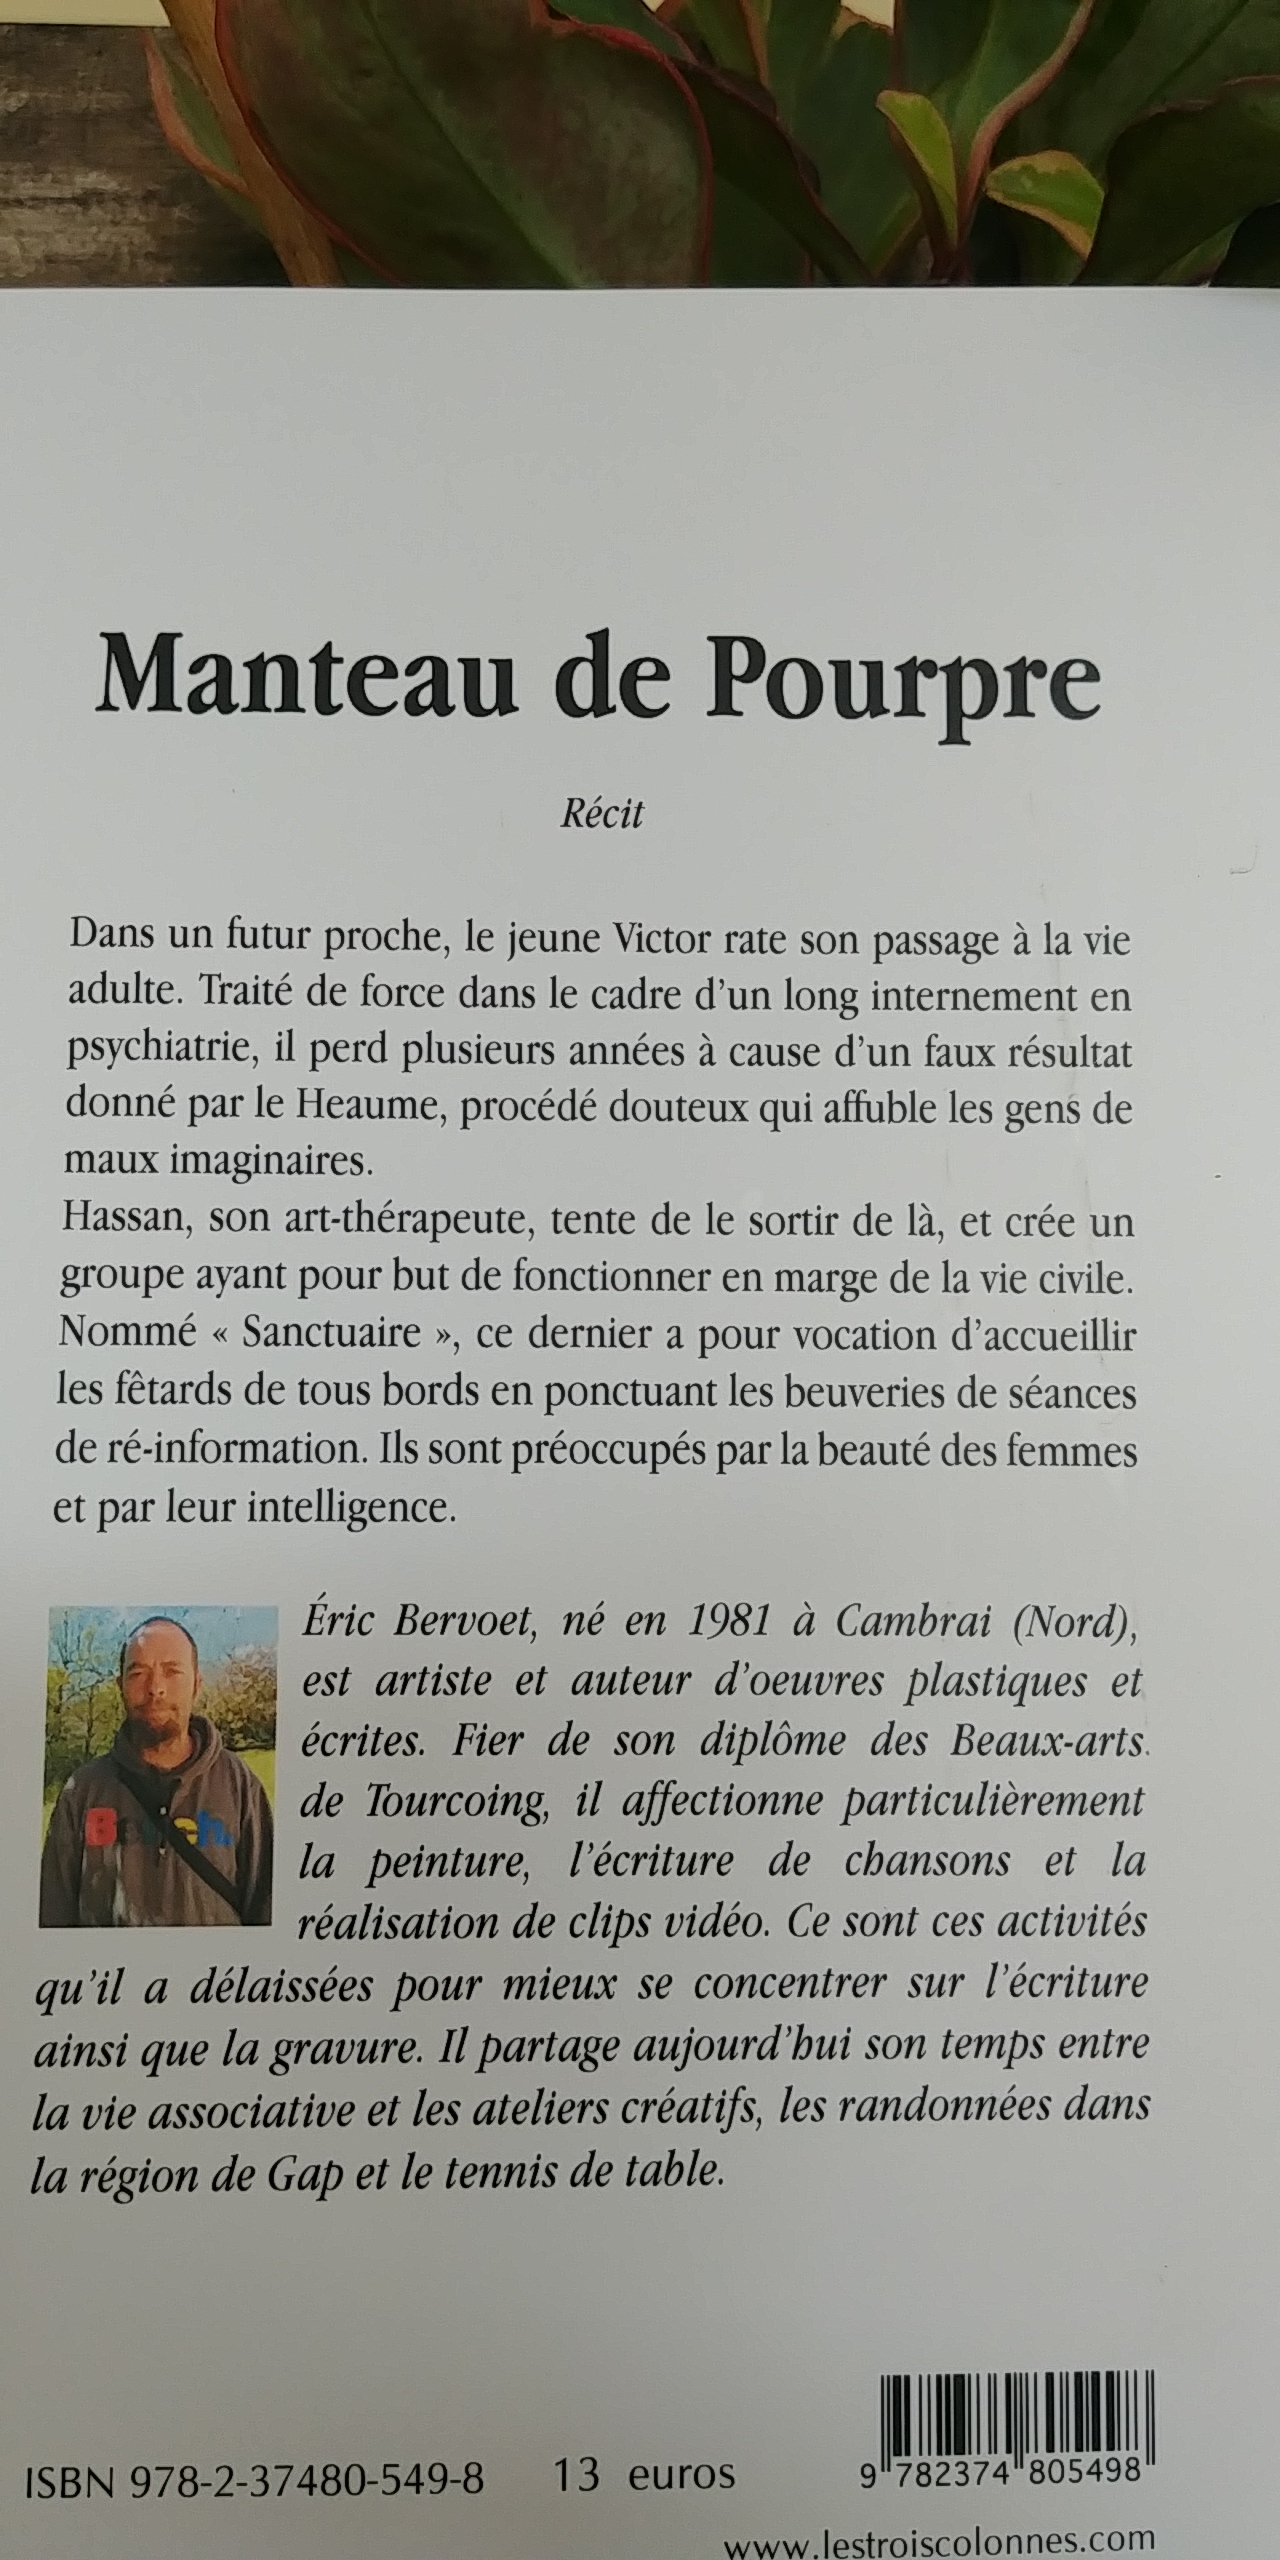 Rencontre et signature du livre Manteau de pourpre d'Eric Bervoet